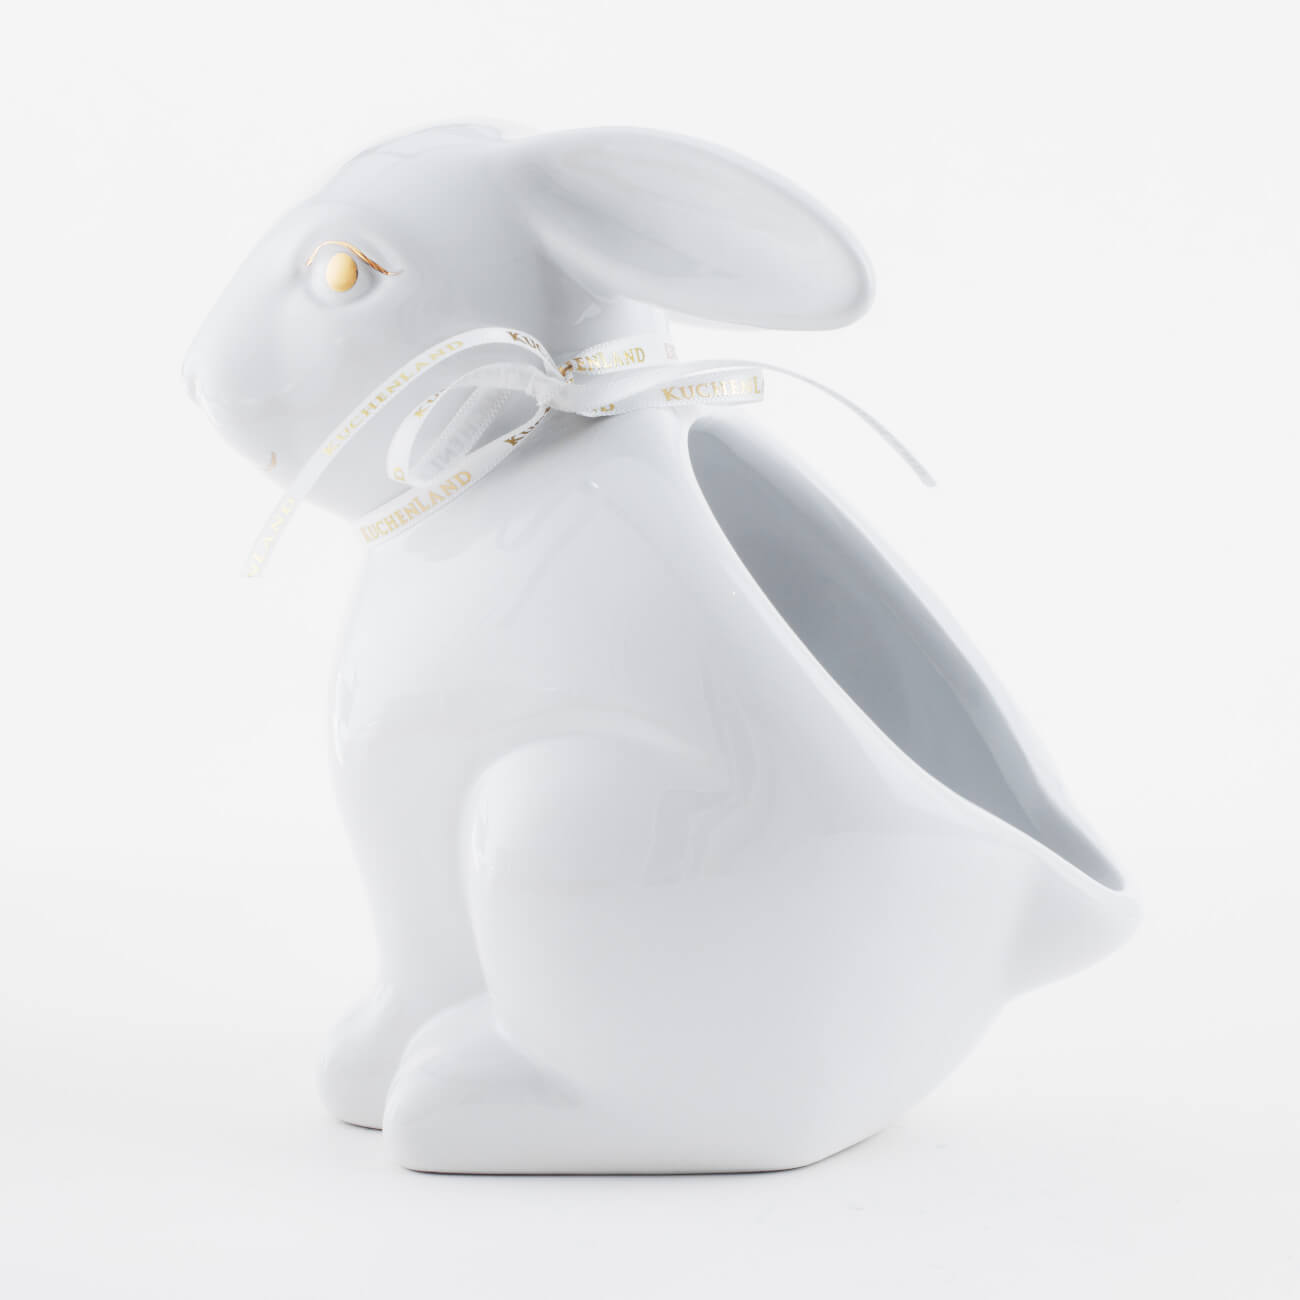 Конфетница, 17х17 см, керамика, белая, Кролик, Easter gold изображение № 1